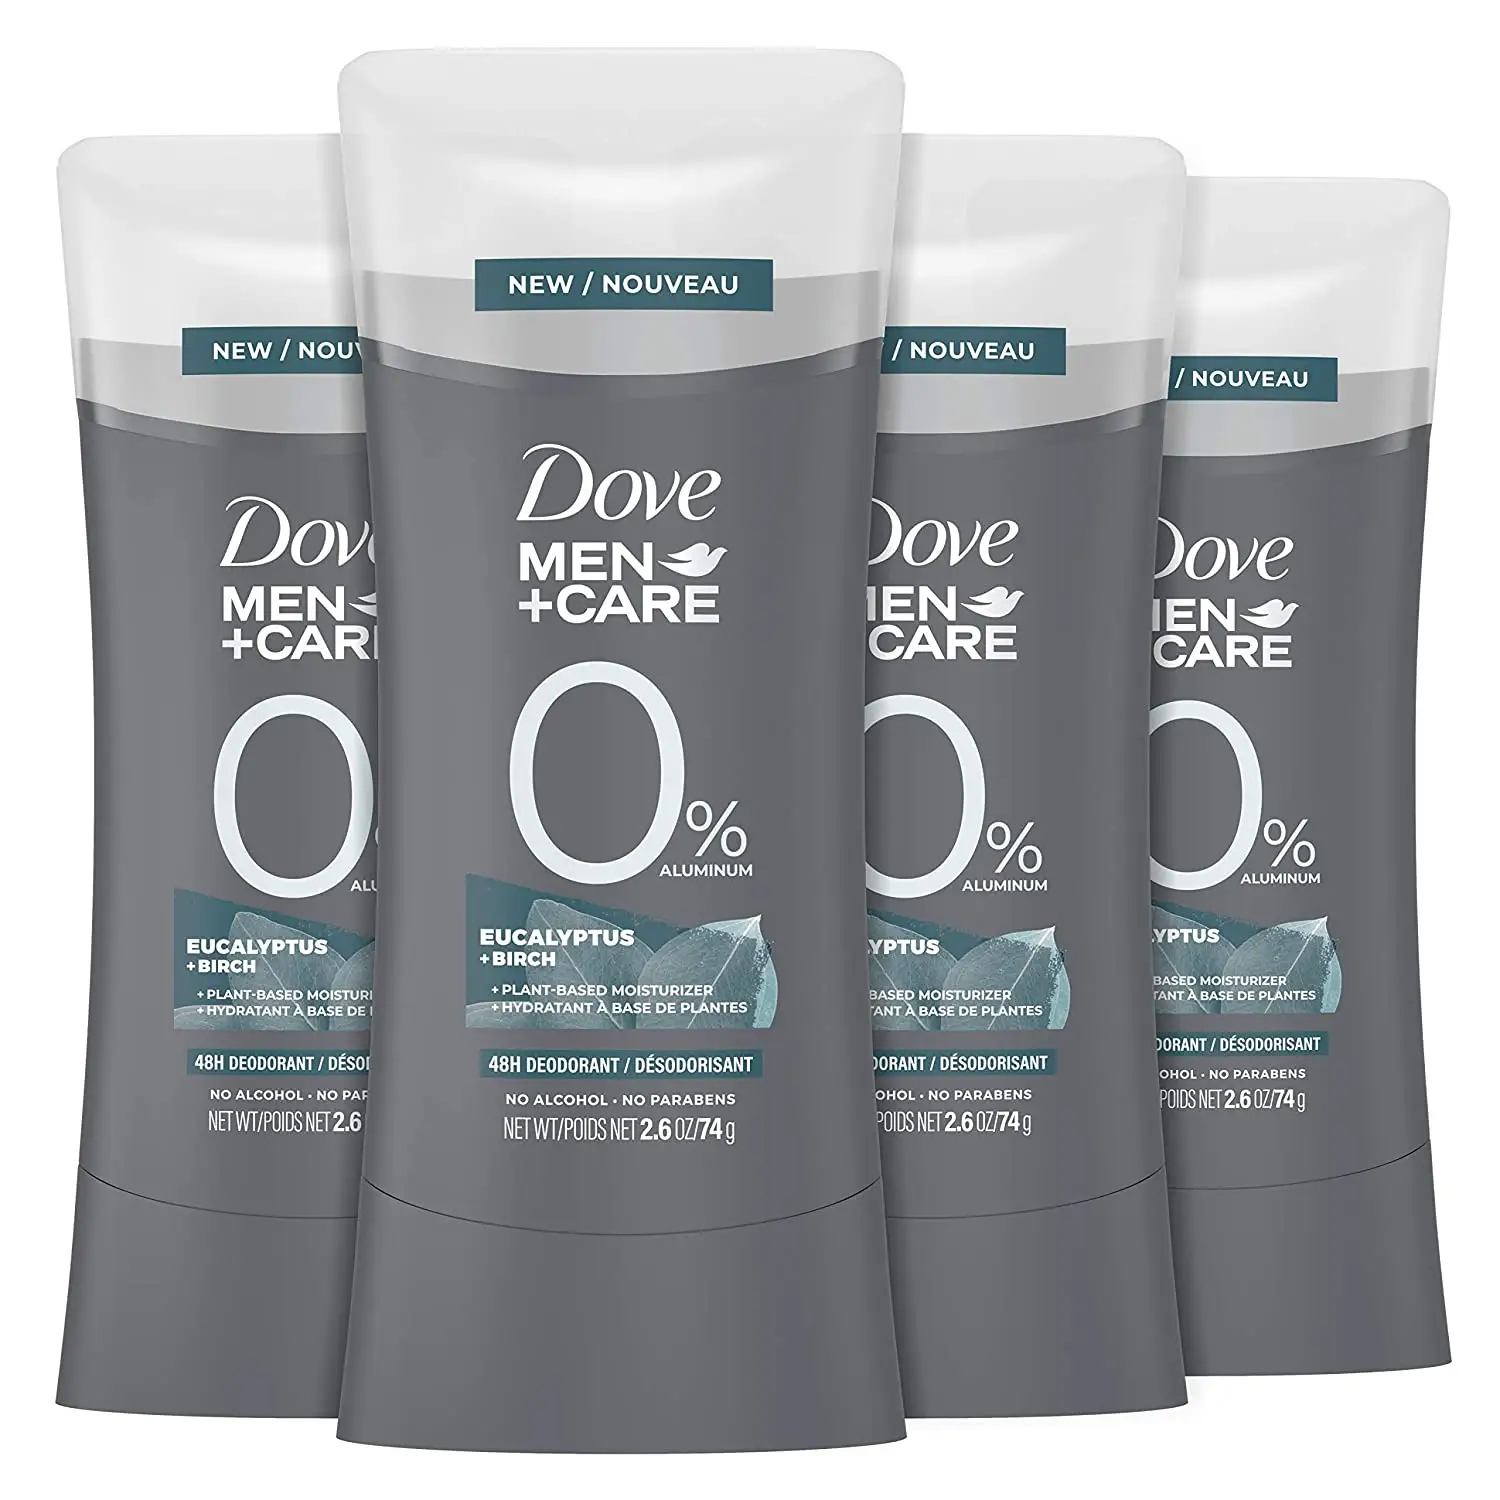 Dove Men+Care 0% Deodorant Stick for Men Aluminum free deodorant